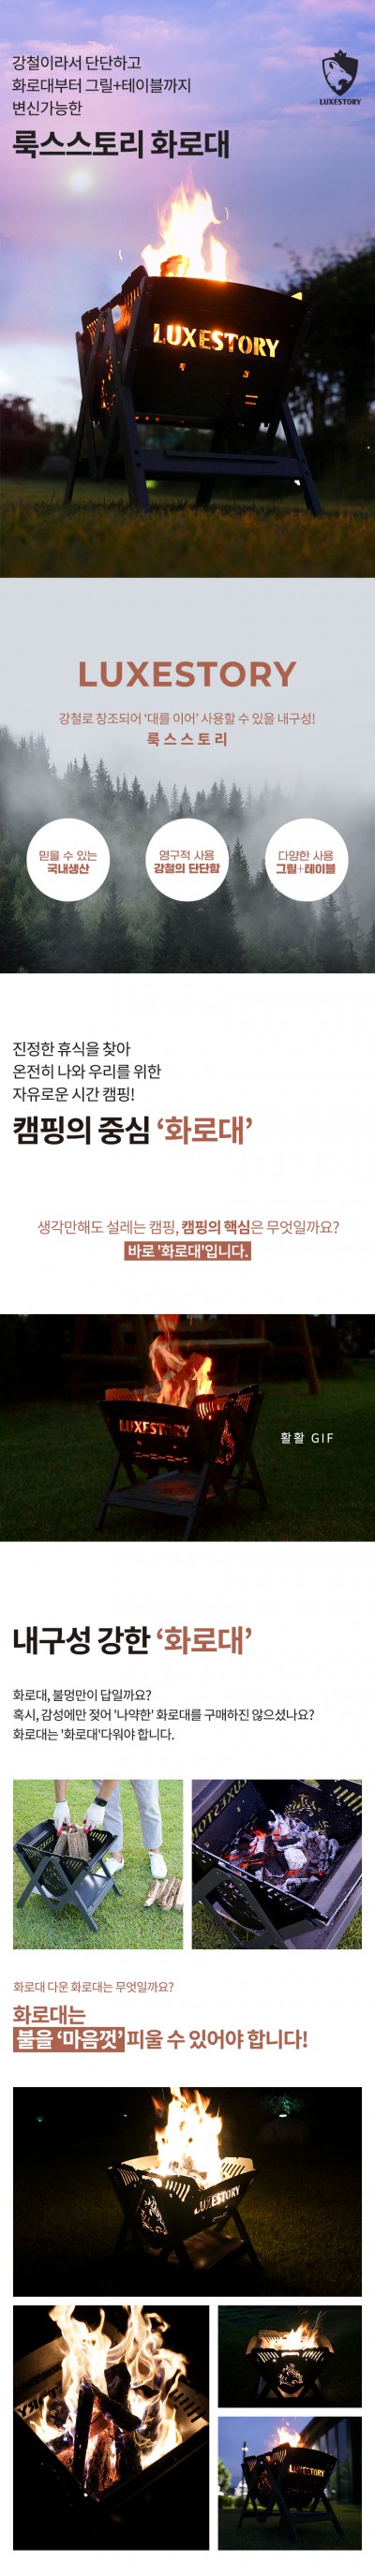 [D201]캠핑 화로대 상세페이지 제작 + 촬영